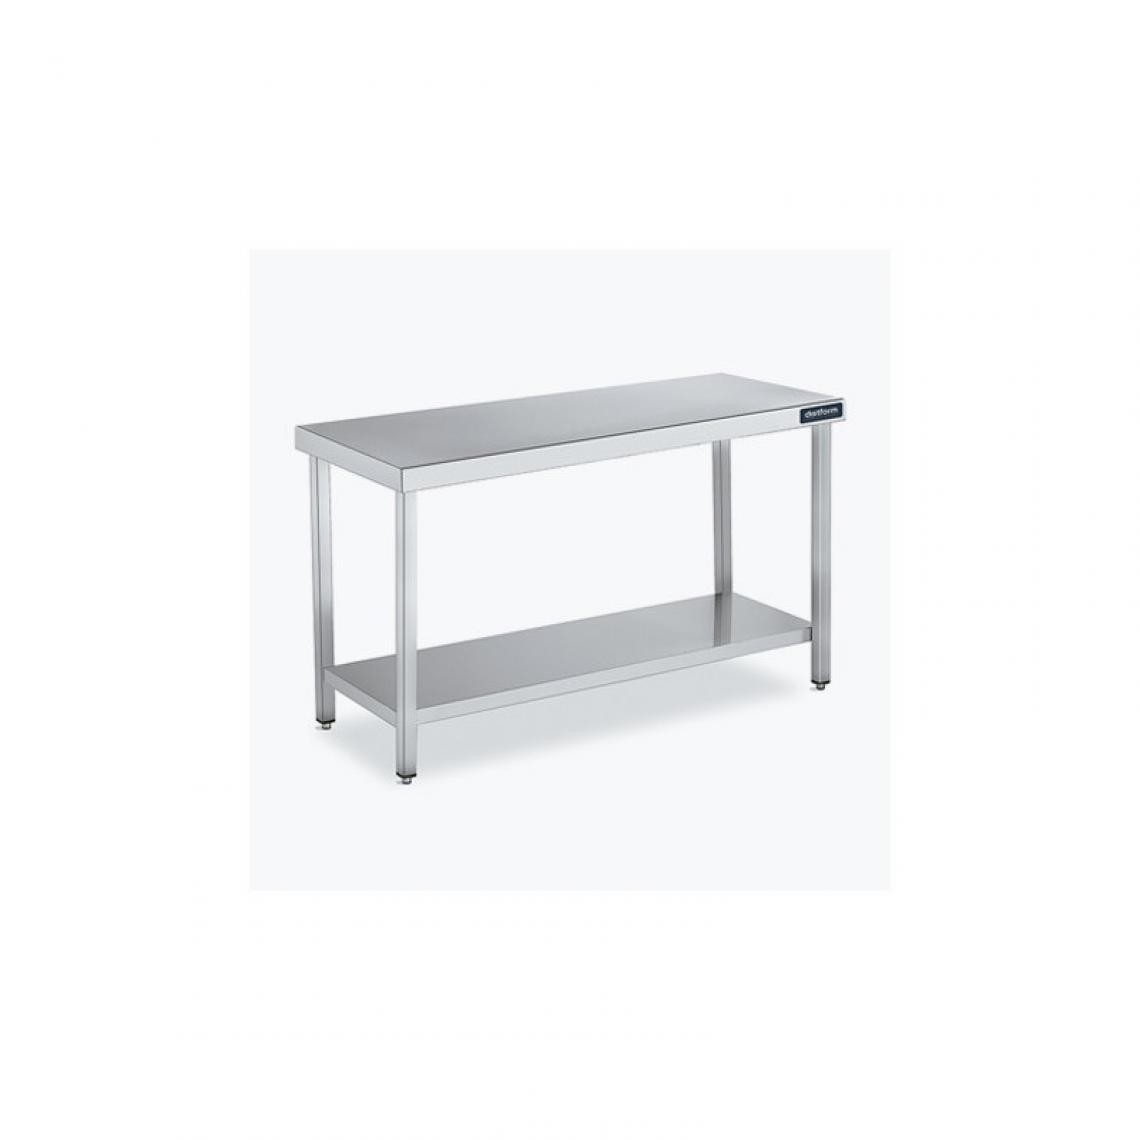 DISTFORM - Table Centrale 600x900 avec Étagère - Distform - Inox 18/101100x900x850mm - Tables à manger